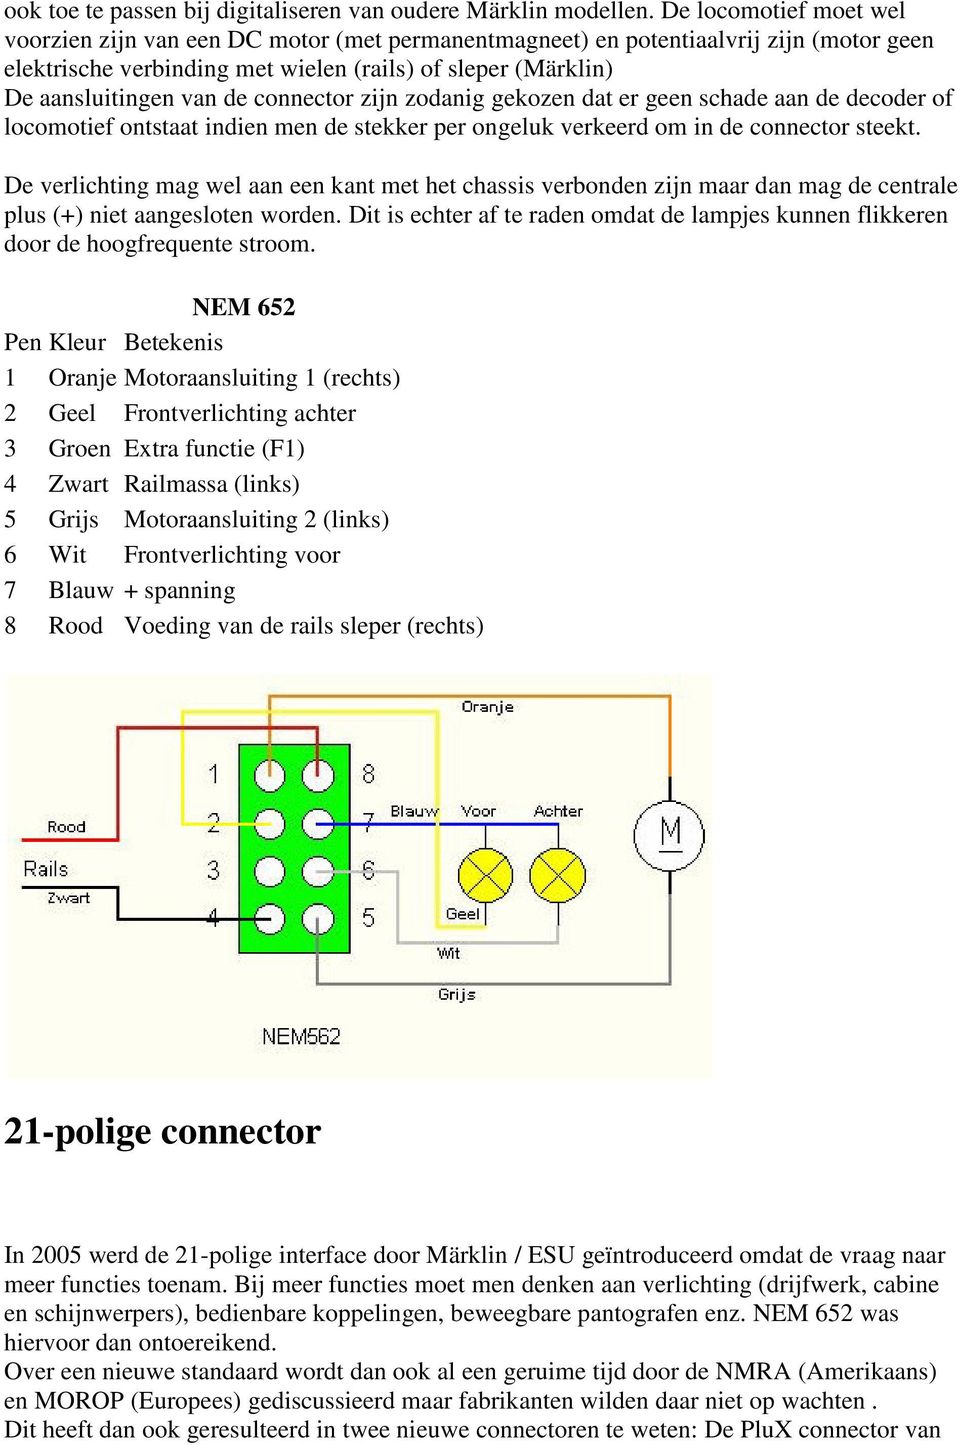 connector zijn zodanig gekozen dat er geen schade aan de decoder of locomotief ontstaat indien men de stekker per ongeluk verkeerd om in de connector steekt.